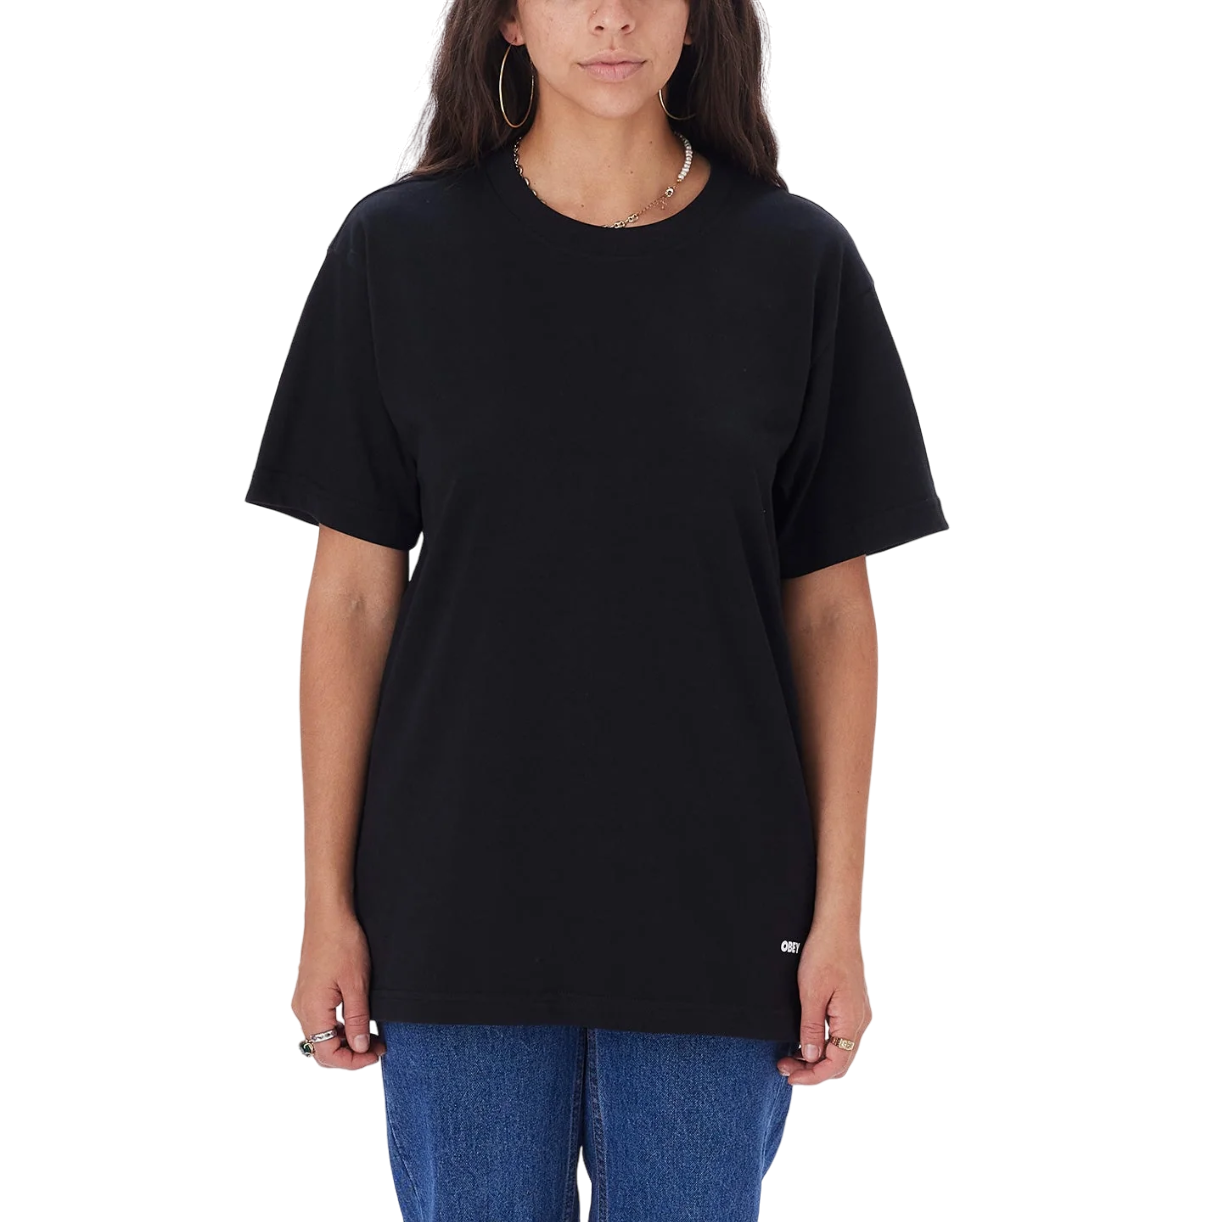 Obey maglietta da adulto Standard 131080300 nero. Confezione da 2 pezzi